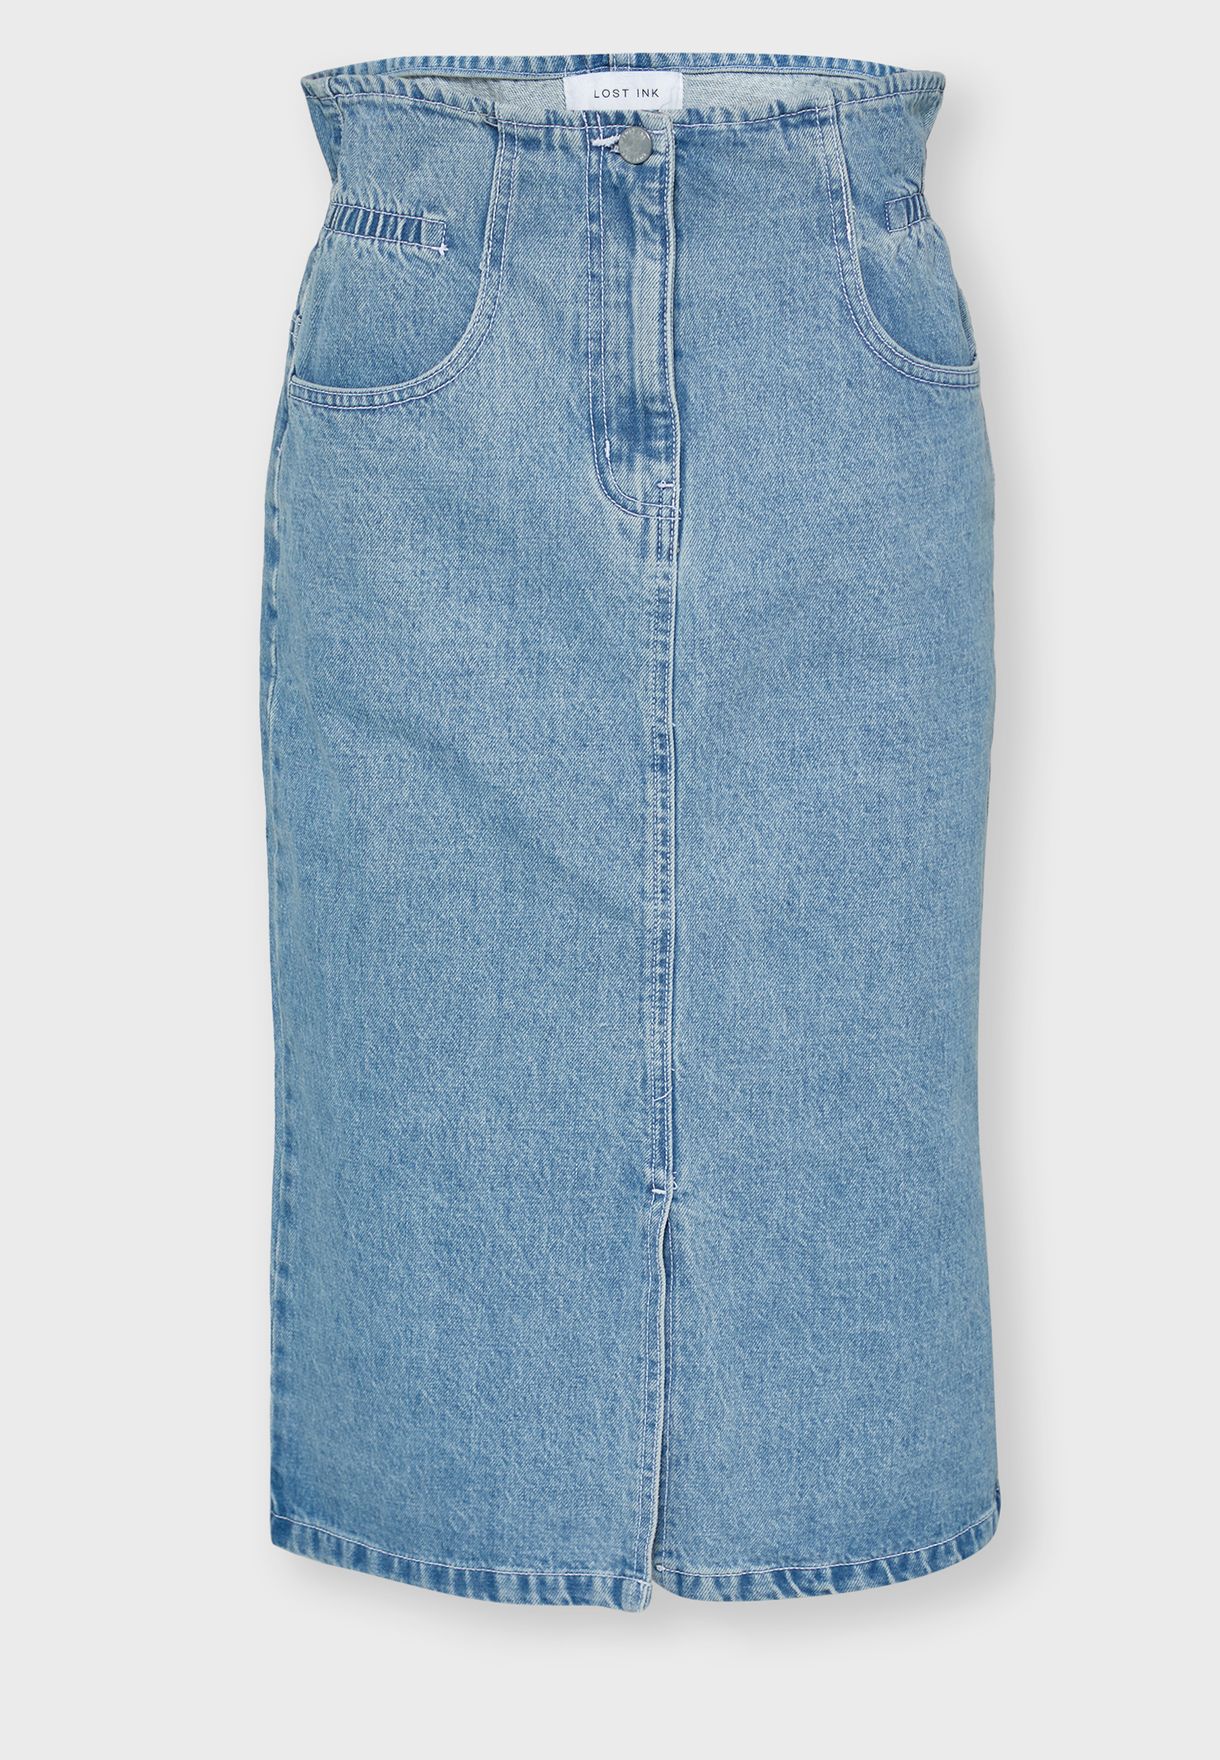 denim skirt with front slit